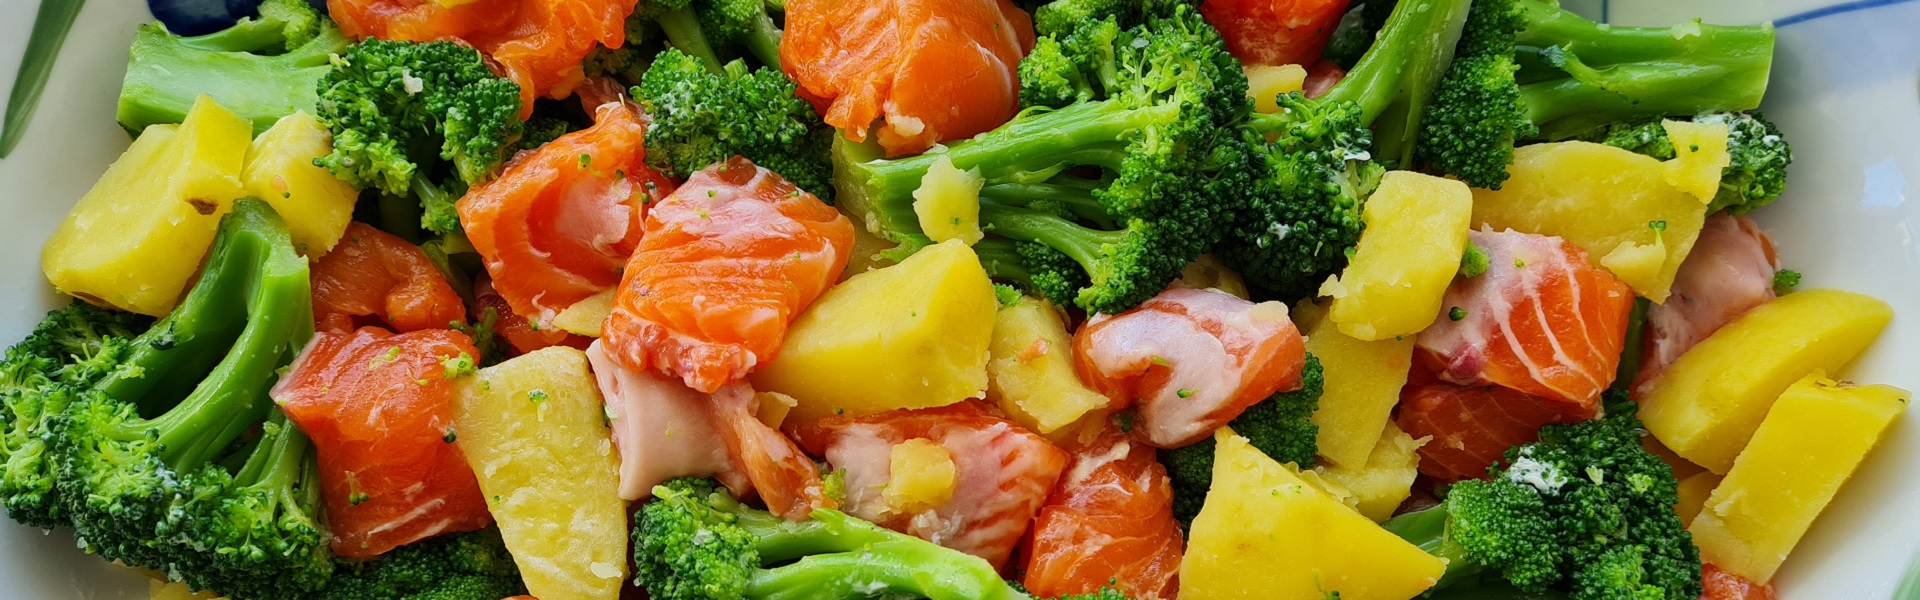 Запеканка из красной рыбы и овощей: вкусно провожаем лето